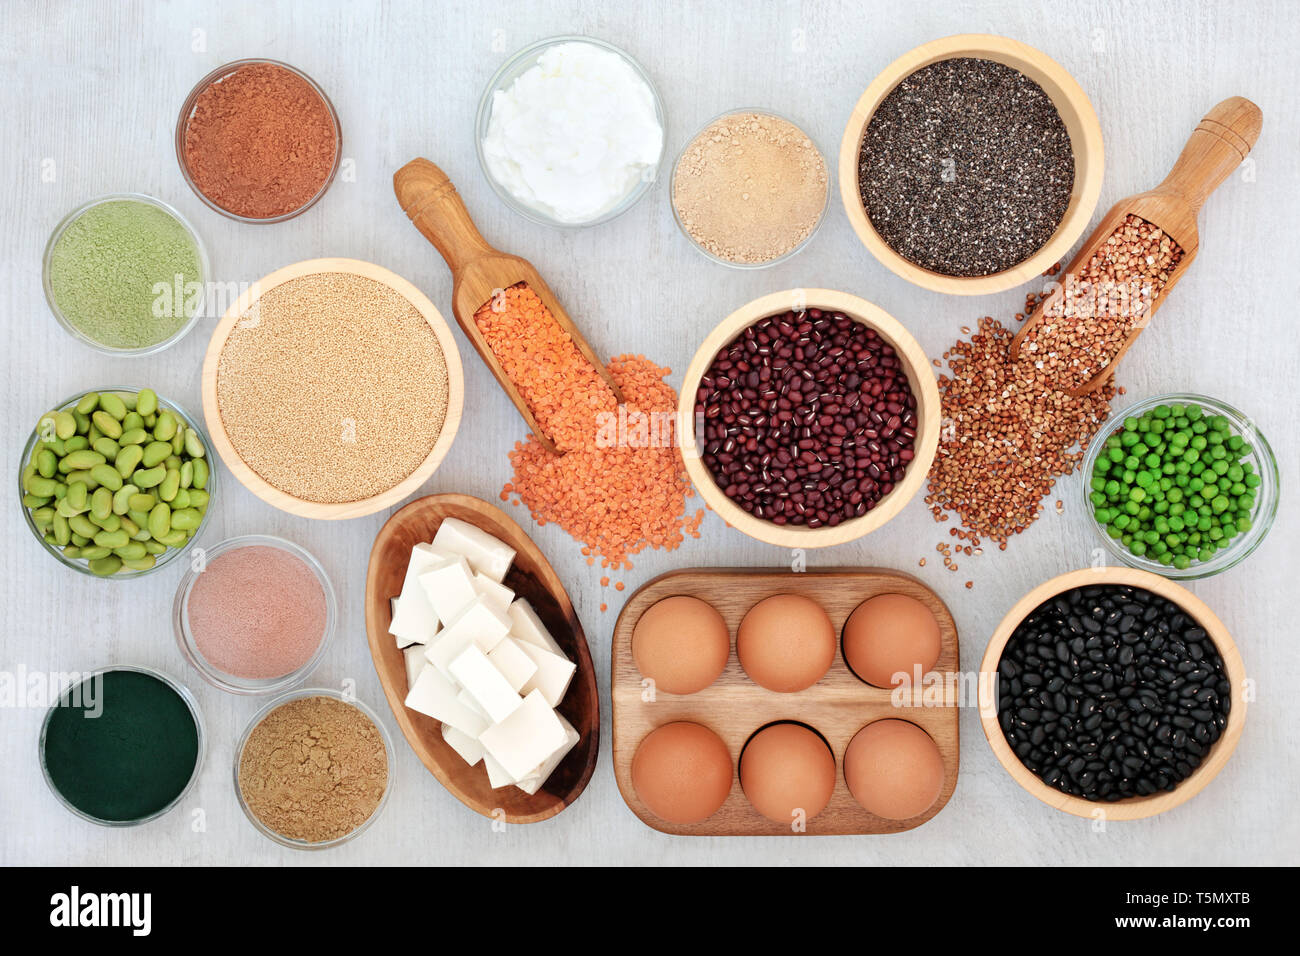 Gesundheit Nahrung mit hohem Proteingehalt mit Gemüse, Milchprodukte, Hülsenfrüchte, Tofu, zu ergänzen, zu Pulver, Körner und Samen. Stockfoto